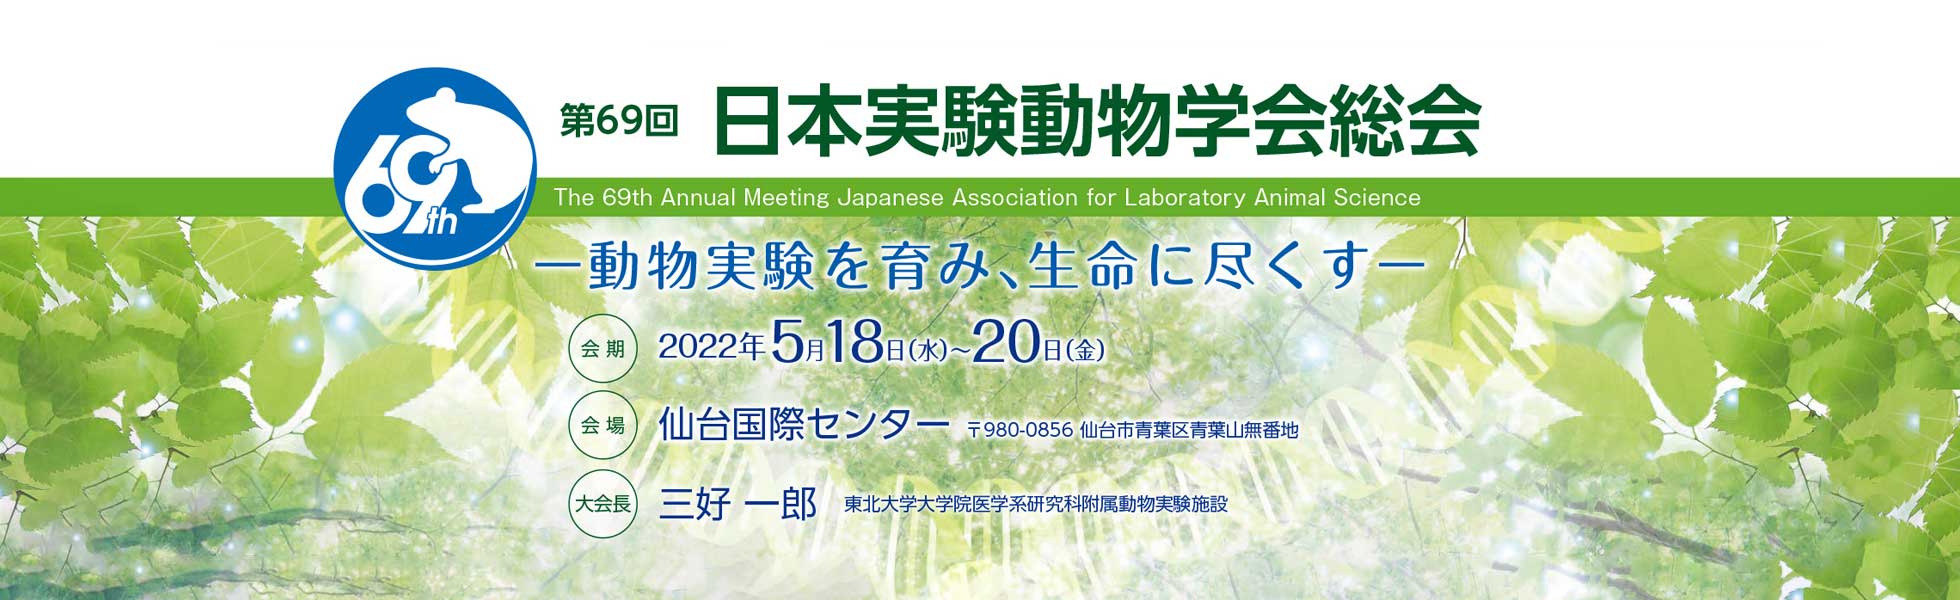 第69回日本実験動物学会総会